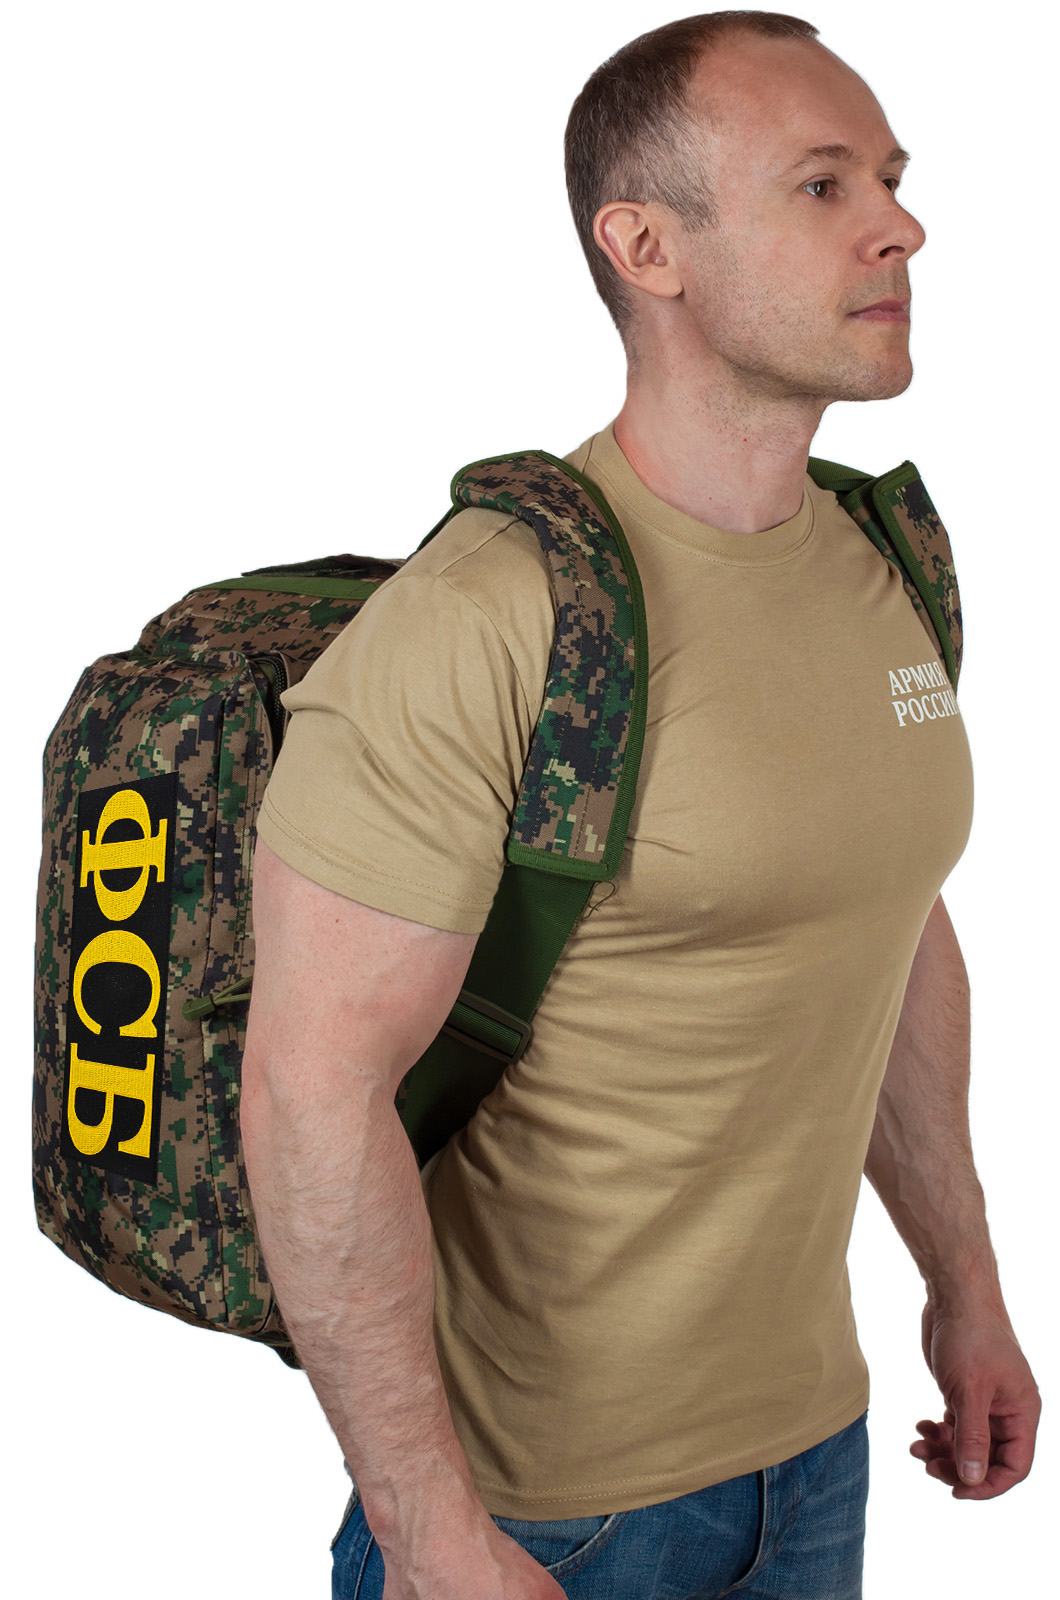 Армейская дорожная сумка с нашивкой ФСБ 